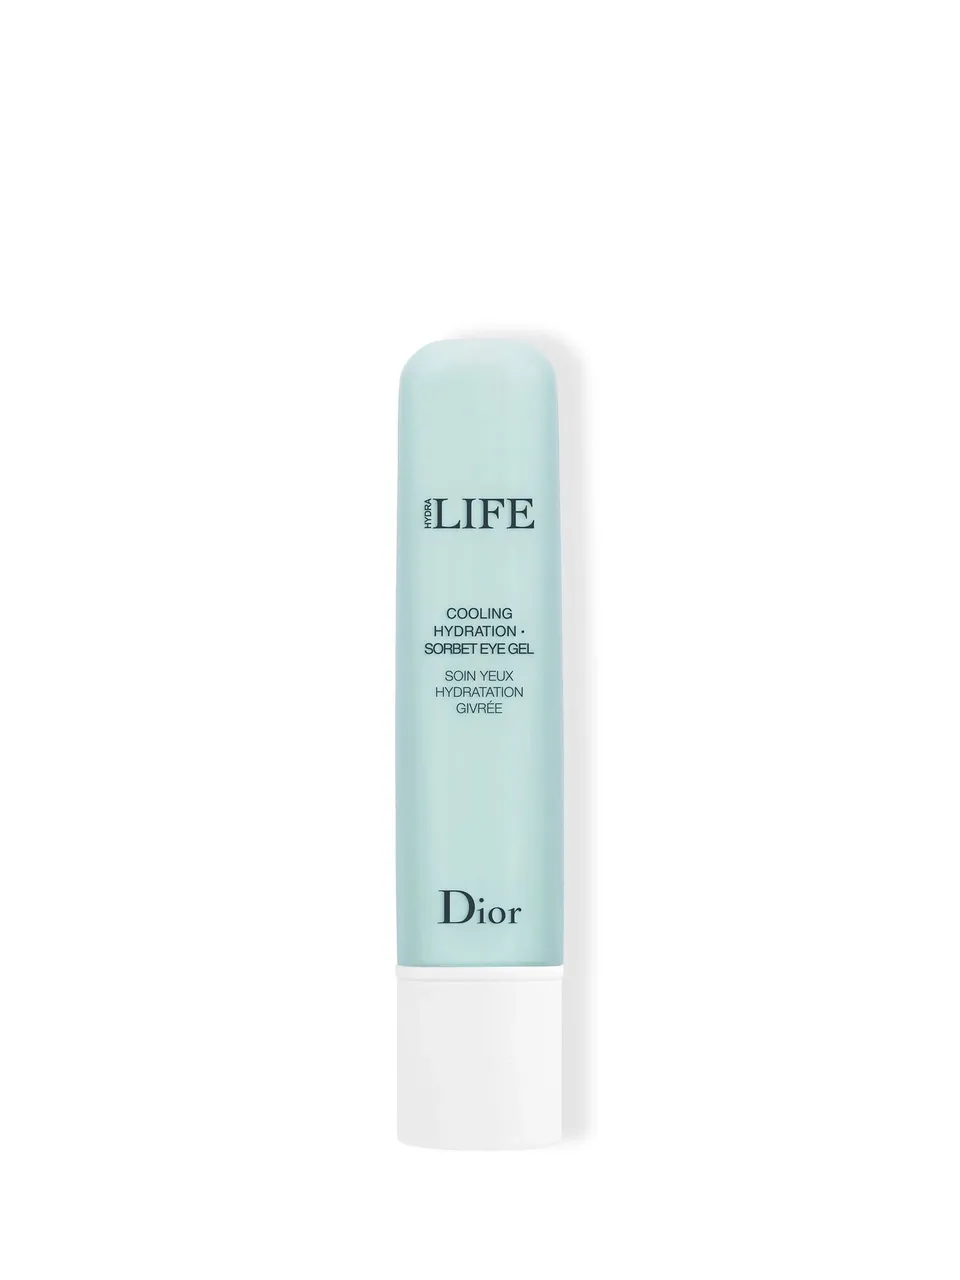 Christian Dior Hydra Life Cooling Hydration - Sorbet Eye Gel, 15ml - Unisex - Size: 15ml